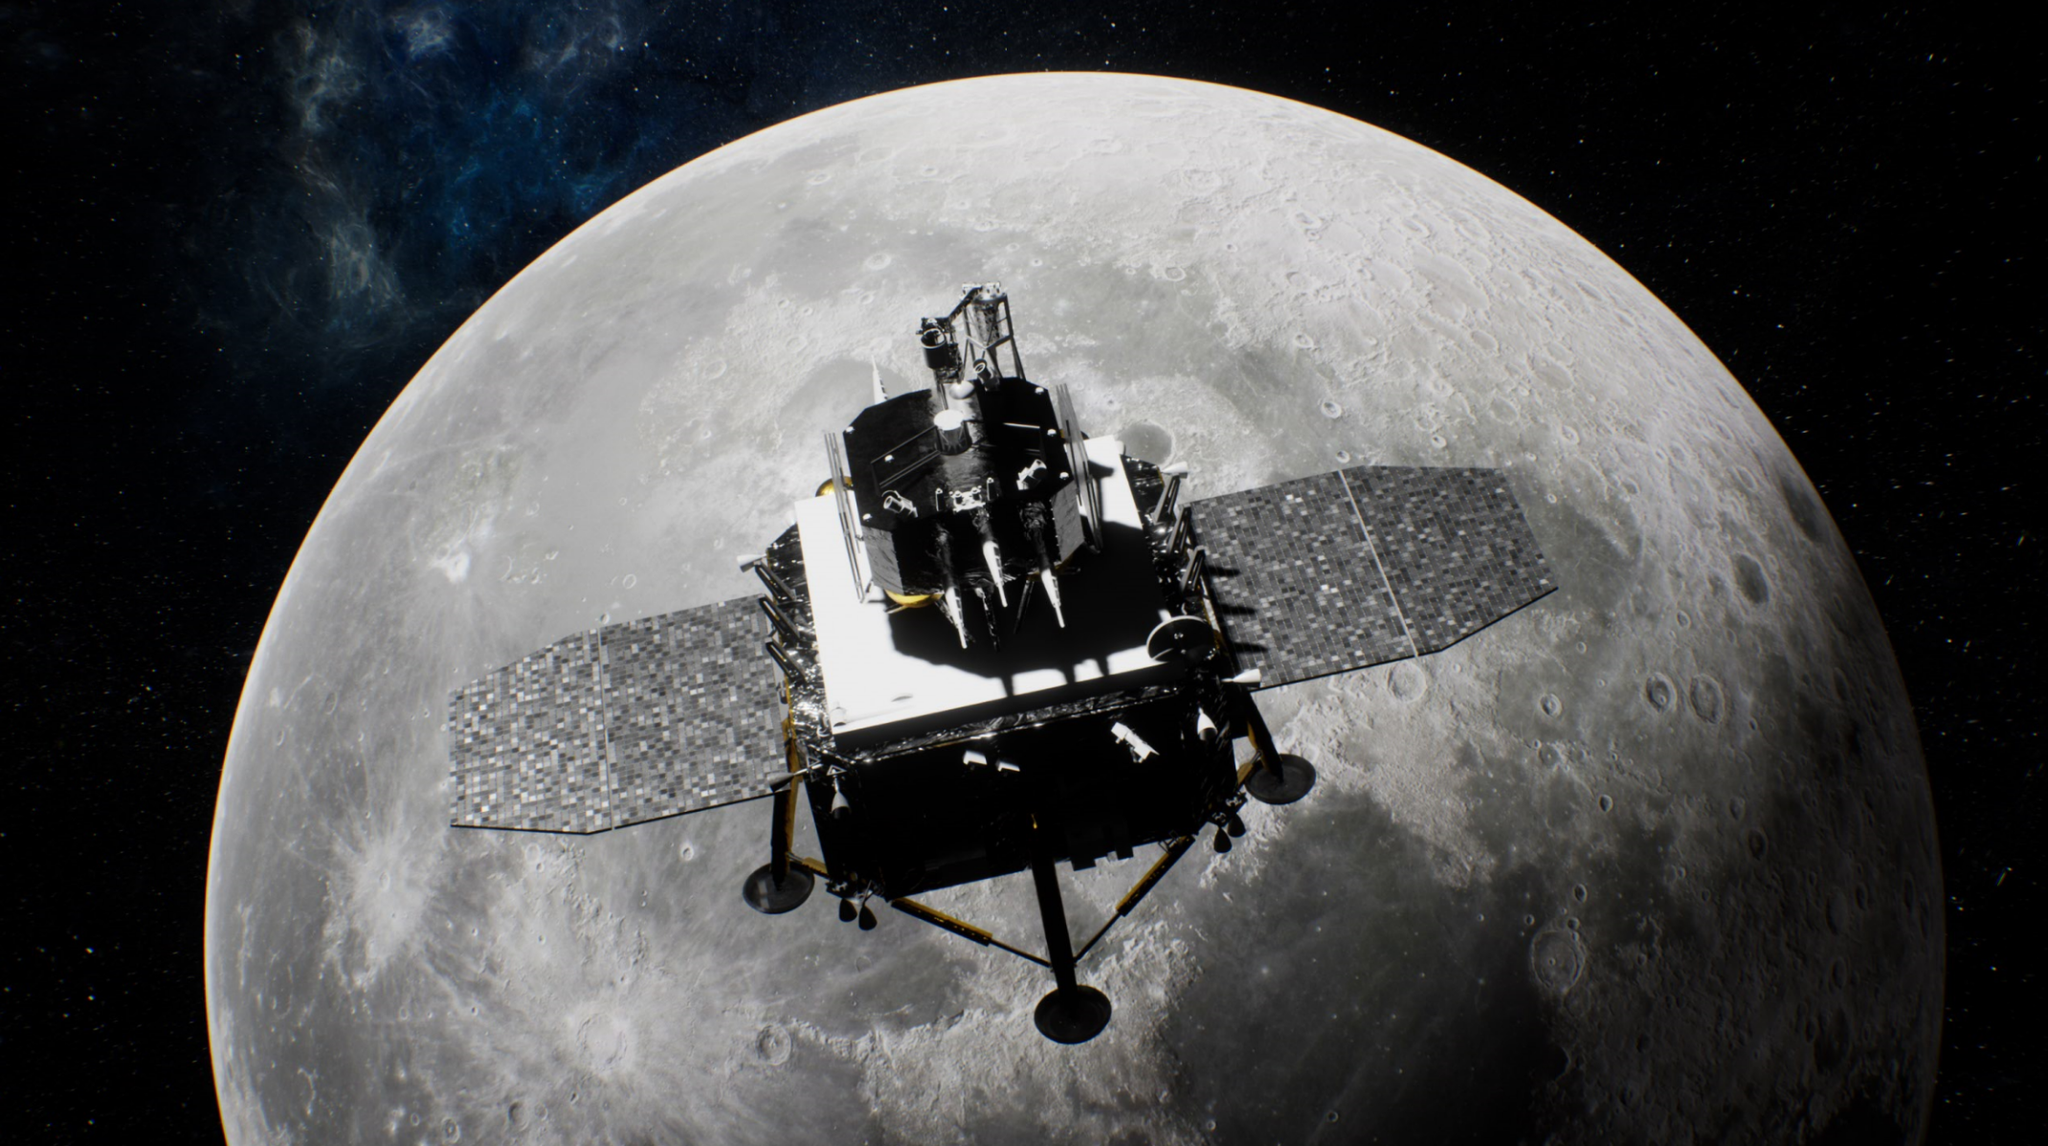 1日23时，嫦娥五号成功落月！_京报网